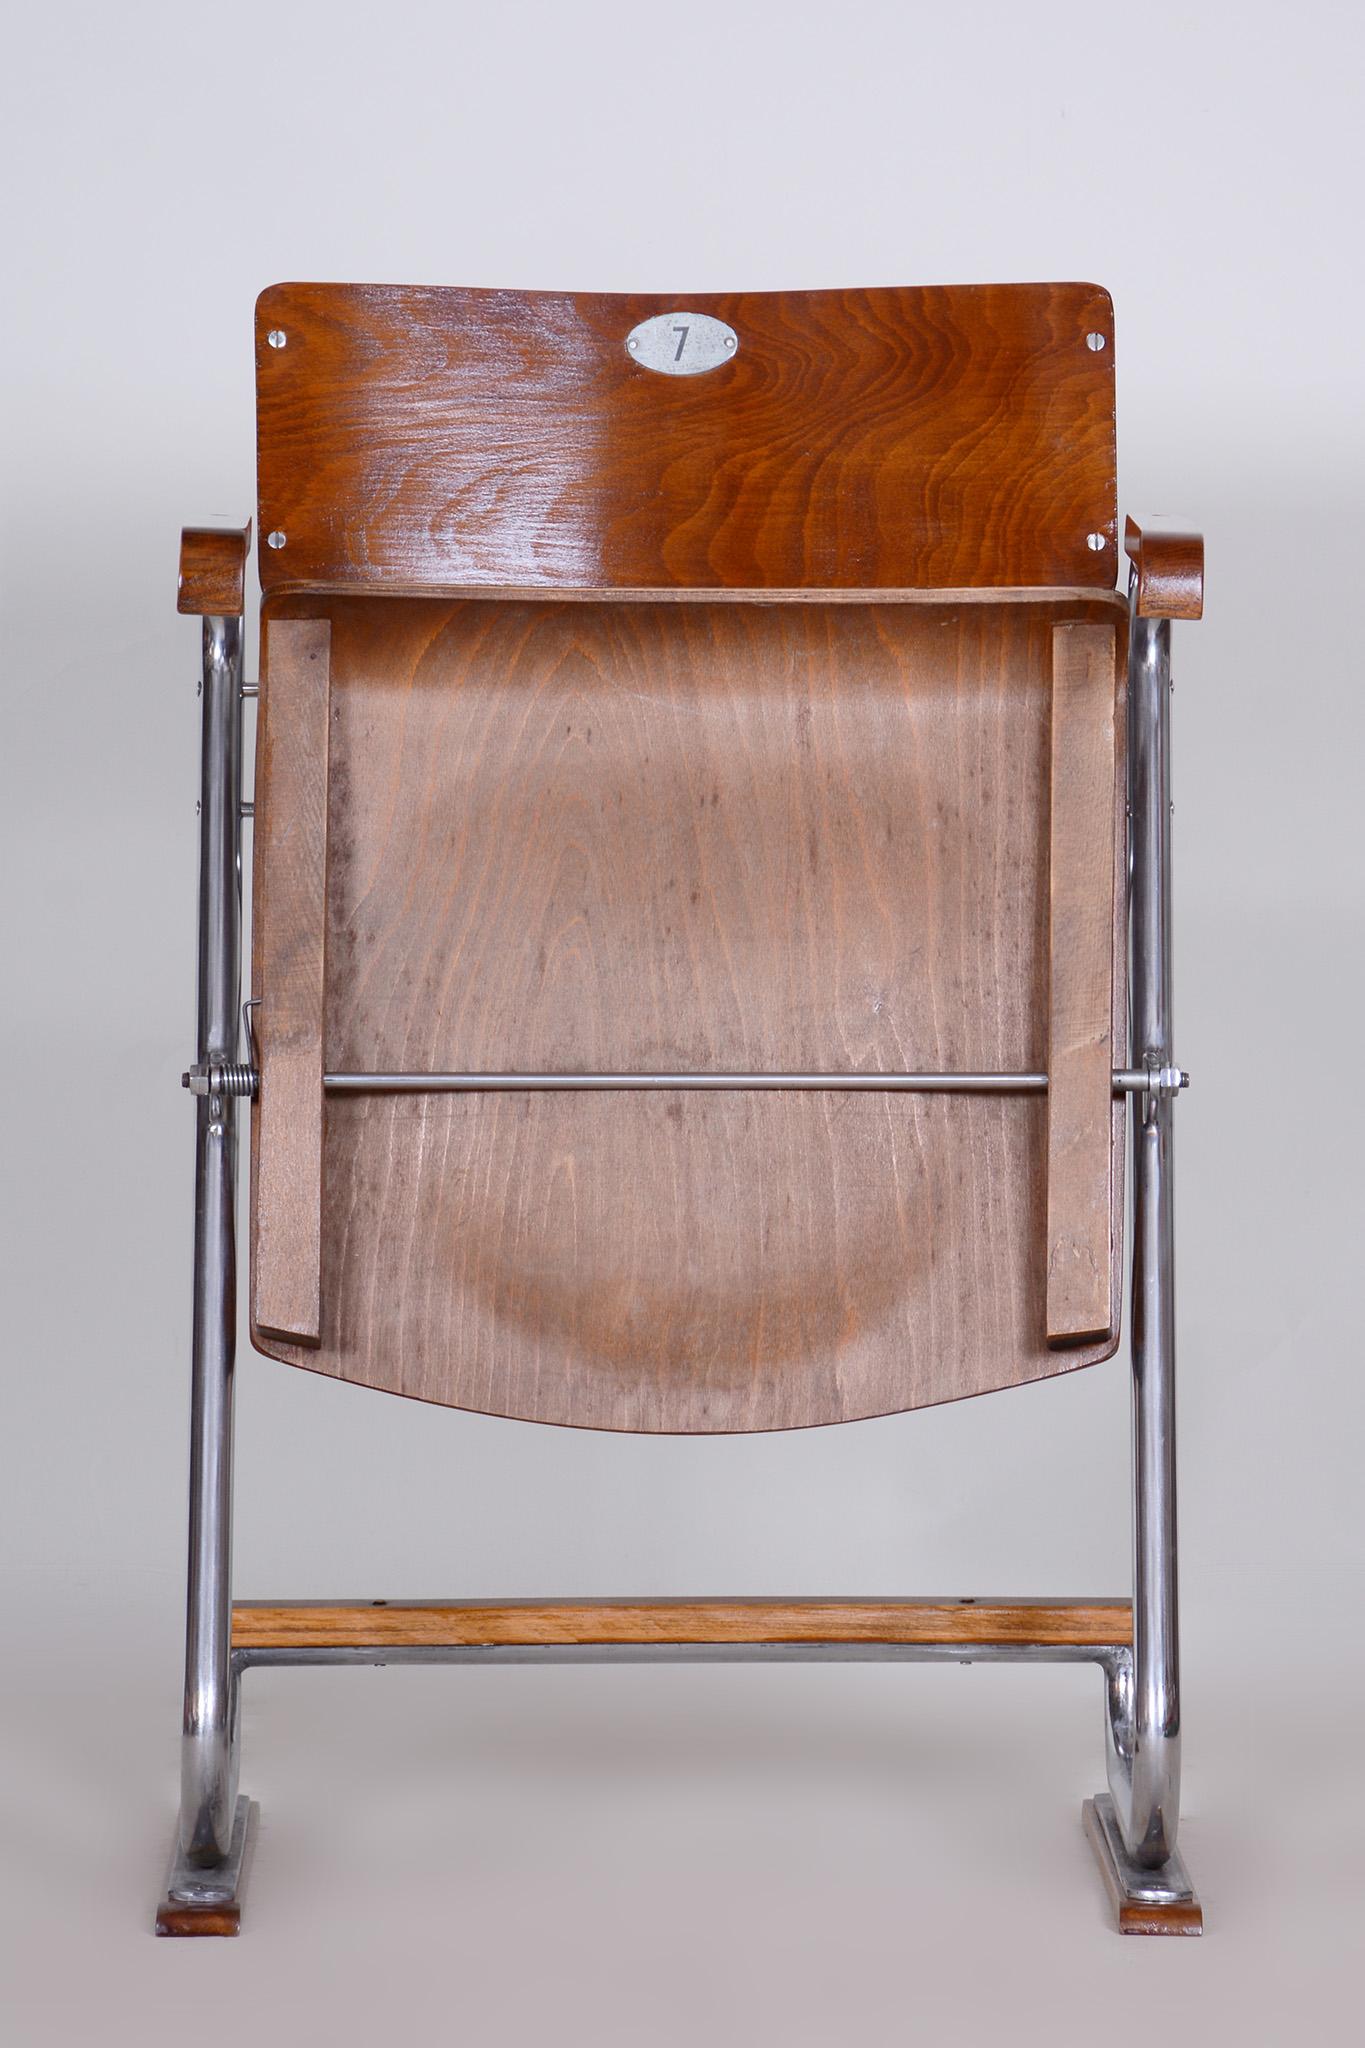 Chaise pliante Bauhaus restaurée.

Style : Bauhaus
Période : 1930-1939
Source : Tchécoslovaquie
Hauteur de l'assise : 48 cm / 17.72″.
Matériau : Contreplaqué de hêtre, acier chromé.

Les pièces chromées ont été nettoyées et restaurées